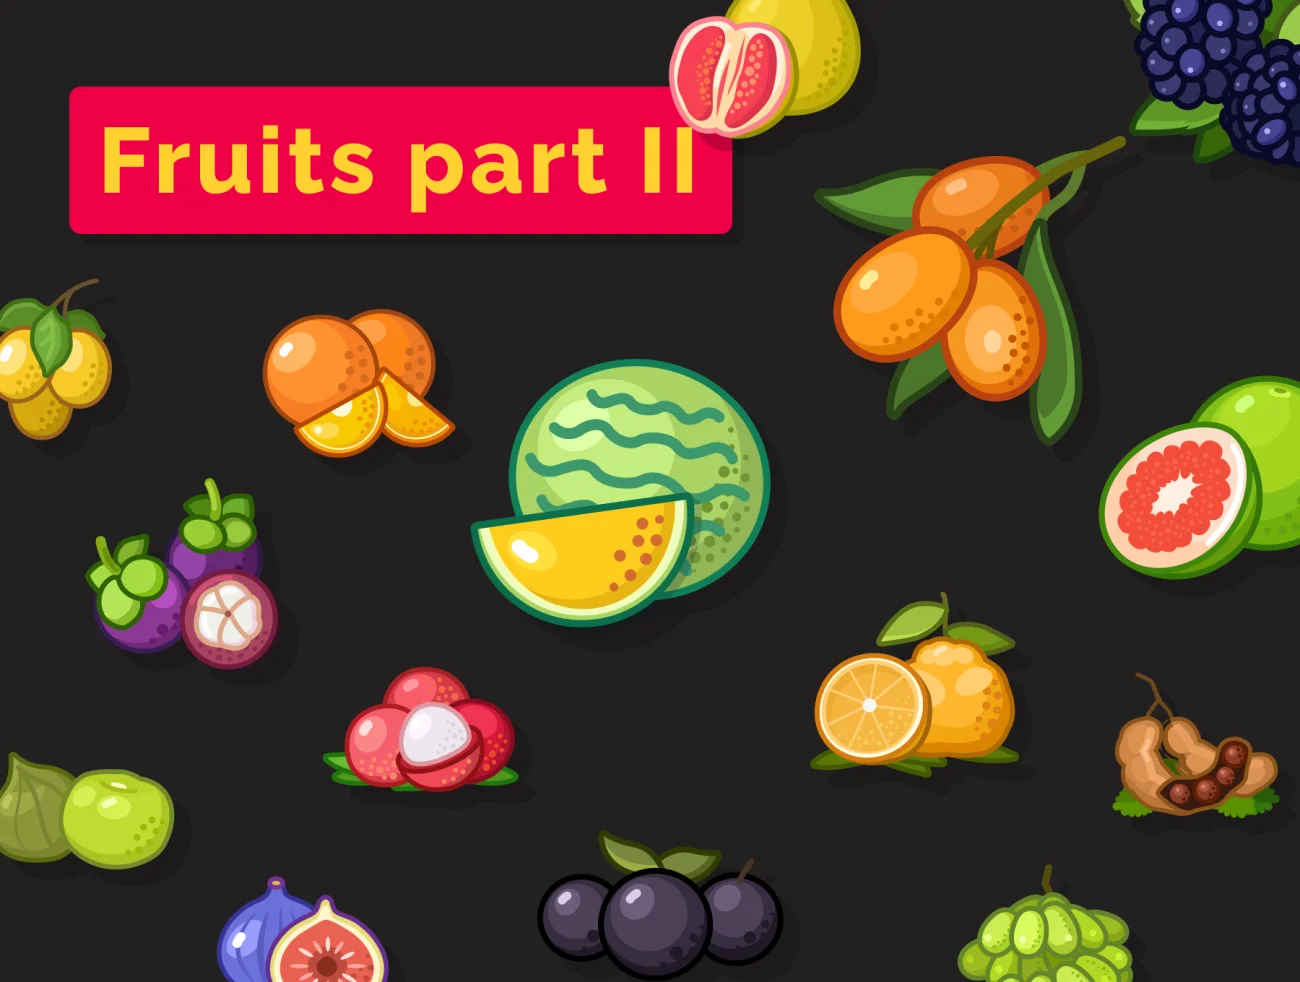 32款3d多彩水果图标 Fruit icons set – part II插图1